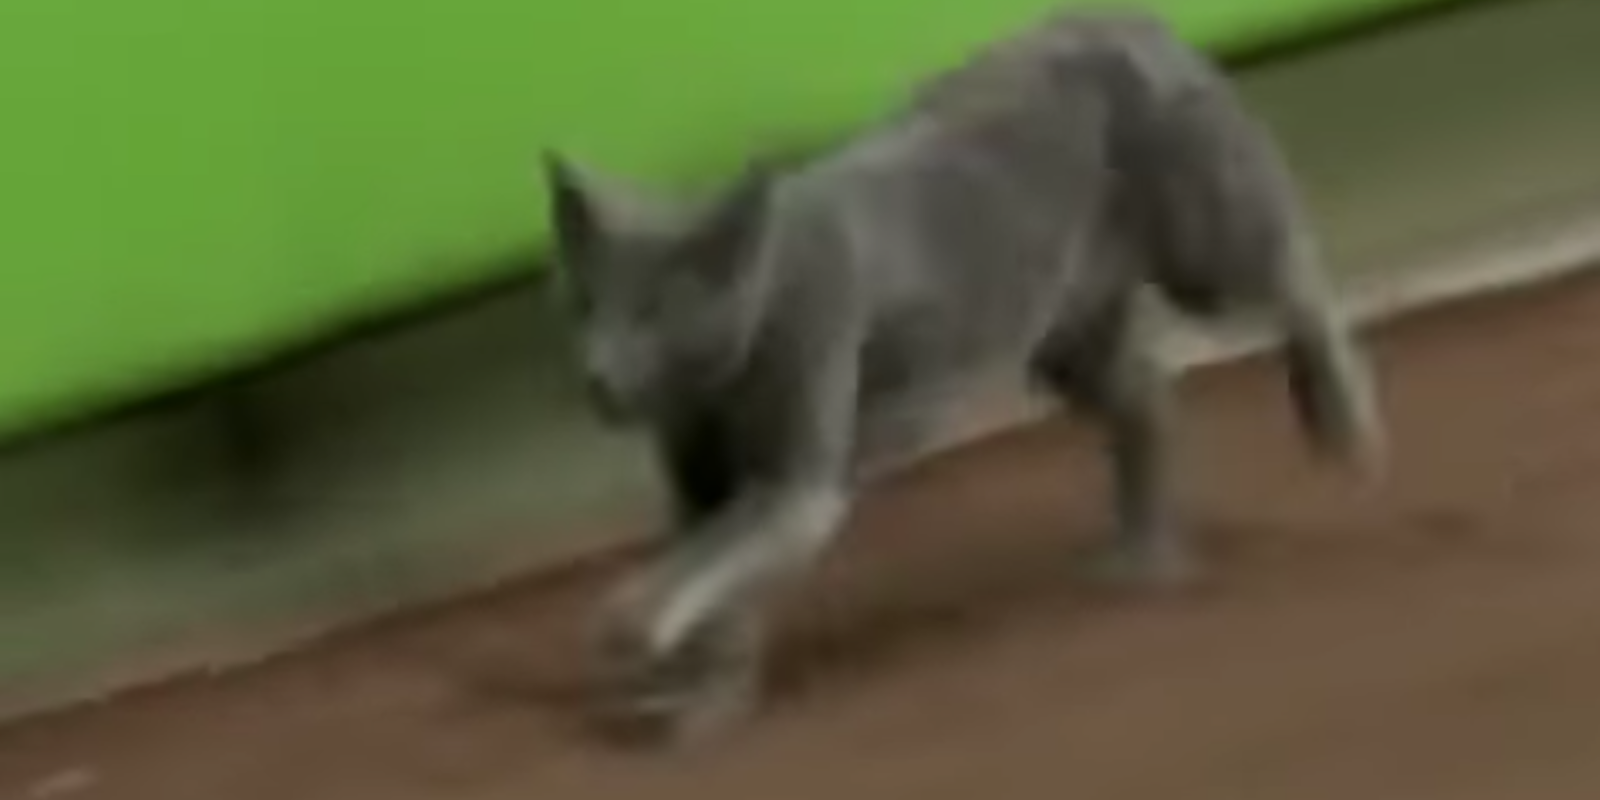 baseball cat: cat shown at marlins game